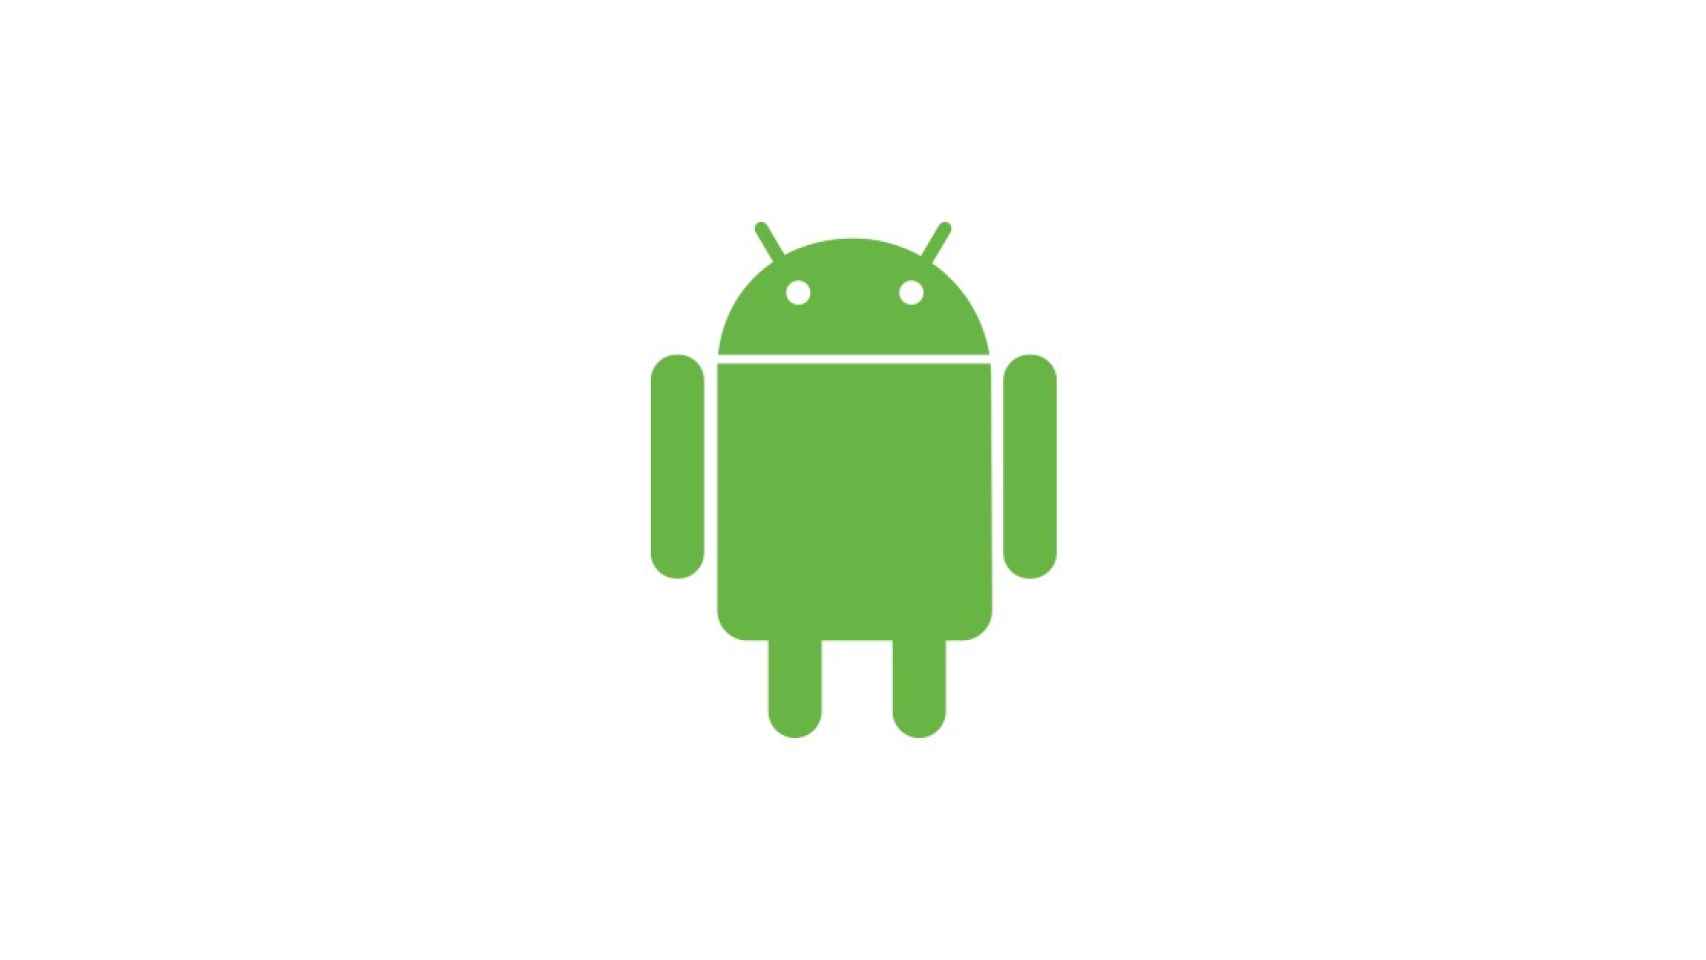 Logotipo de Android, el sistema operativo de Google.